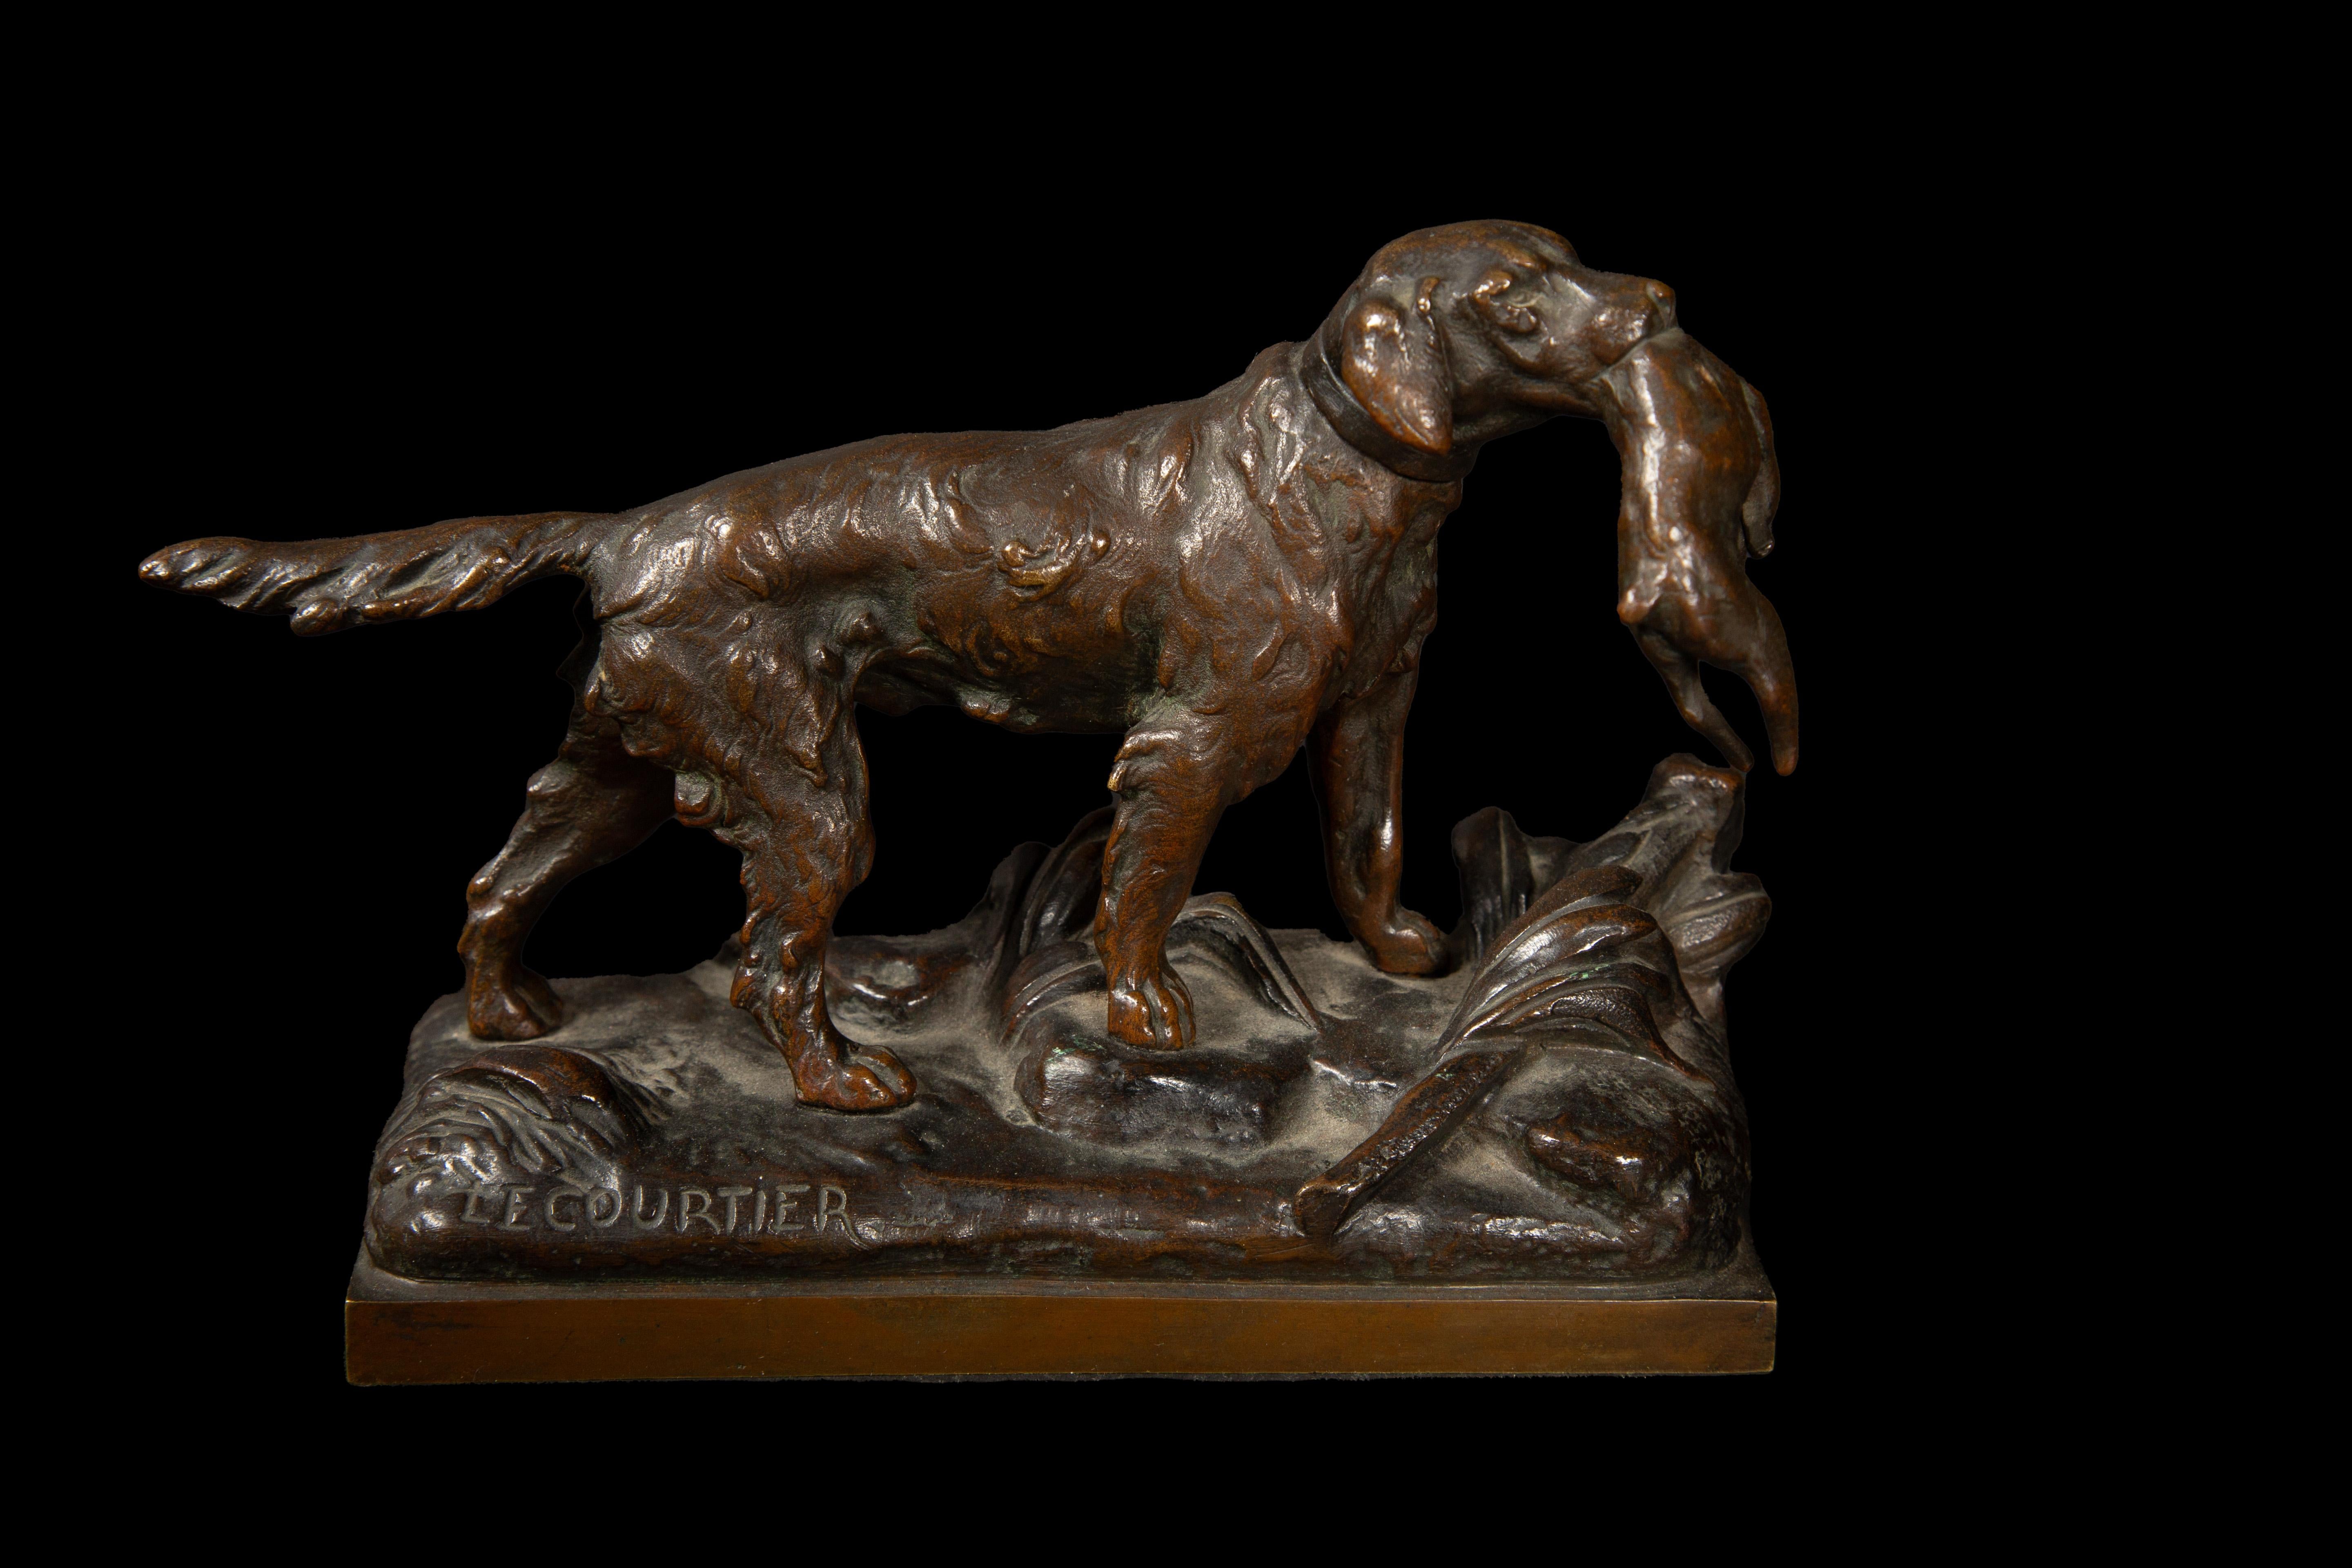 D'après Prosper LECOURTIER (1855-1924), sculpteur renommé pour son talent exceptionnel à capturer l'essence et la beauté des animaux, nous trouvons une remarquable sculpture de chien de chasse tenant un lièvre. L'œuvre d'art en bronze témoigne de la